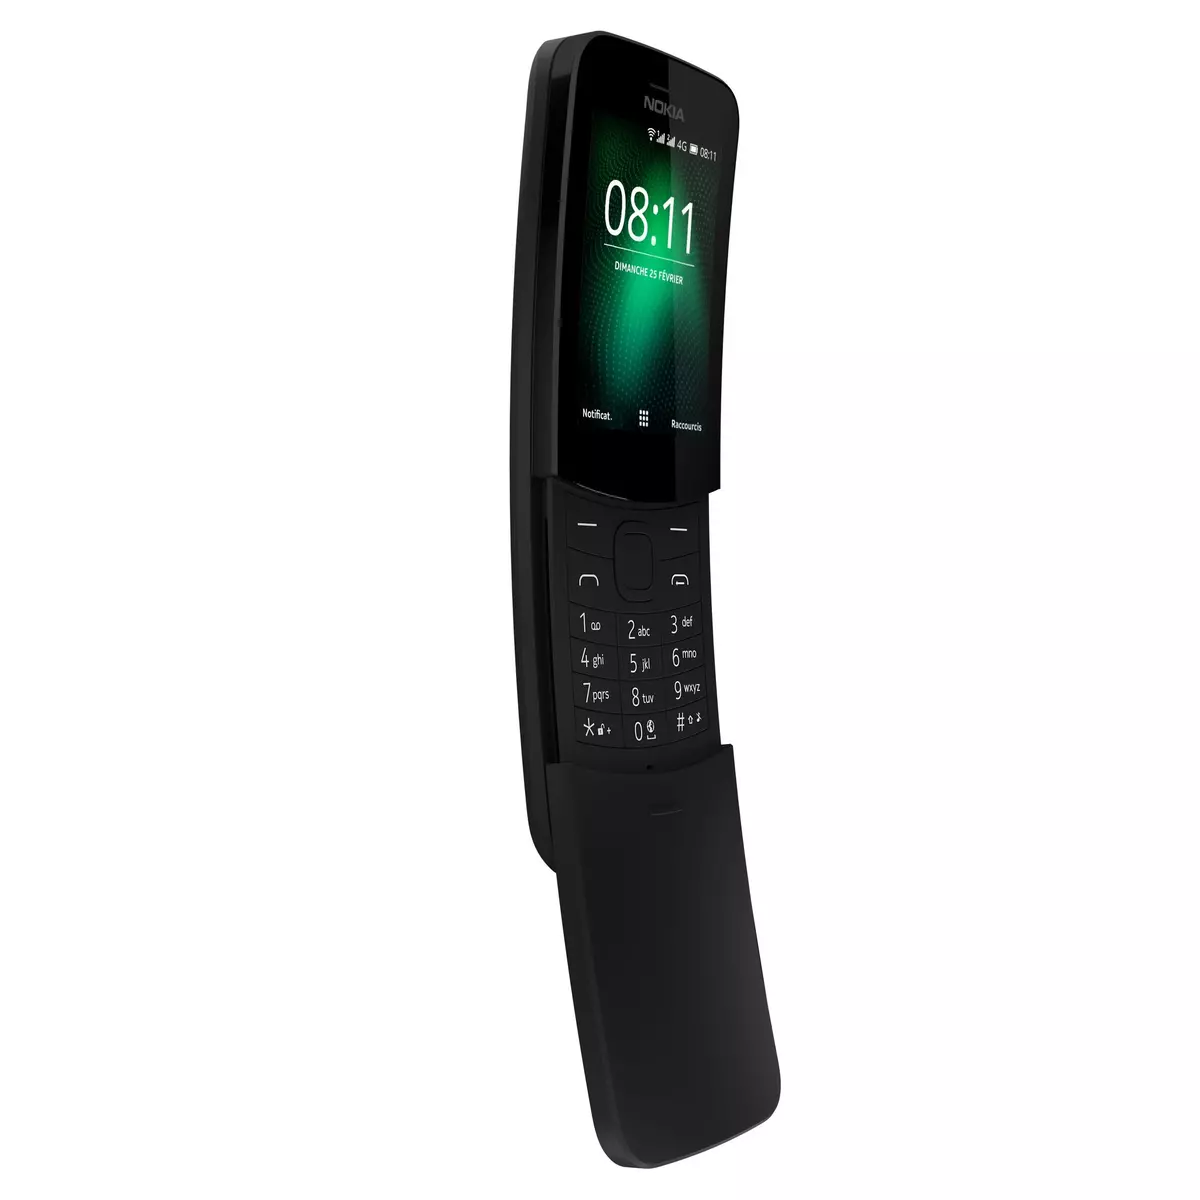 NOKIA Téléphone mobile 8110 - Noir - Double SIM